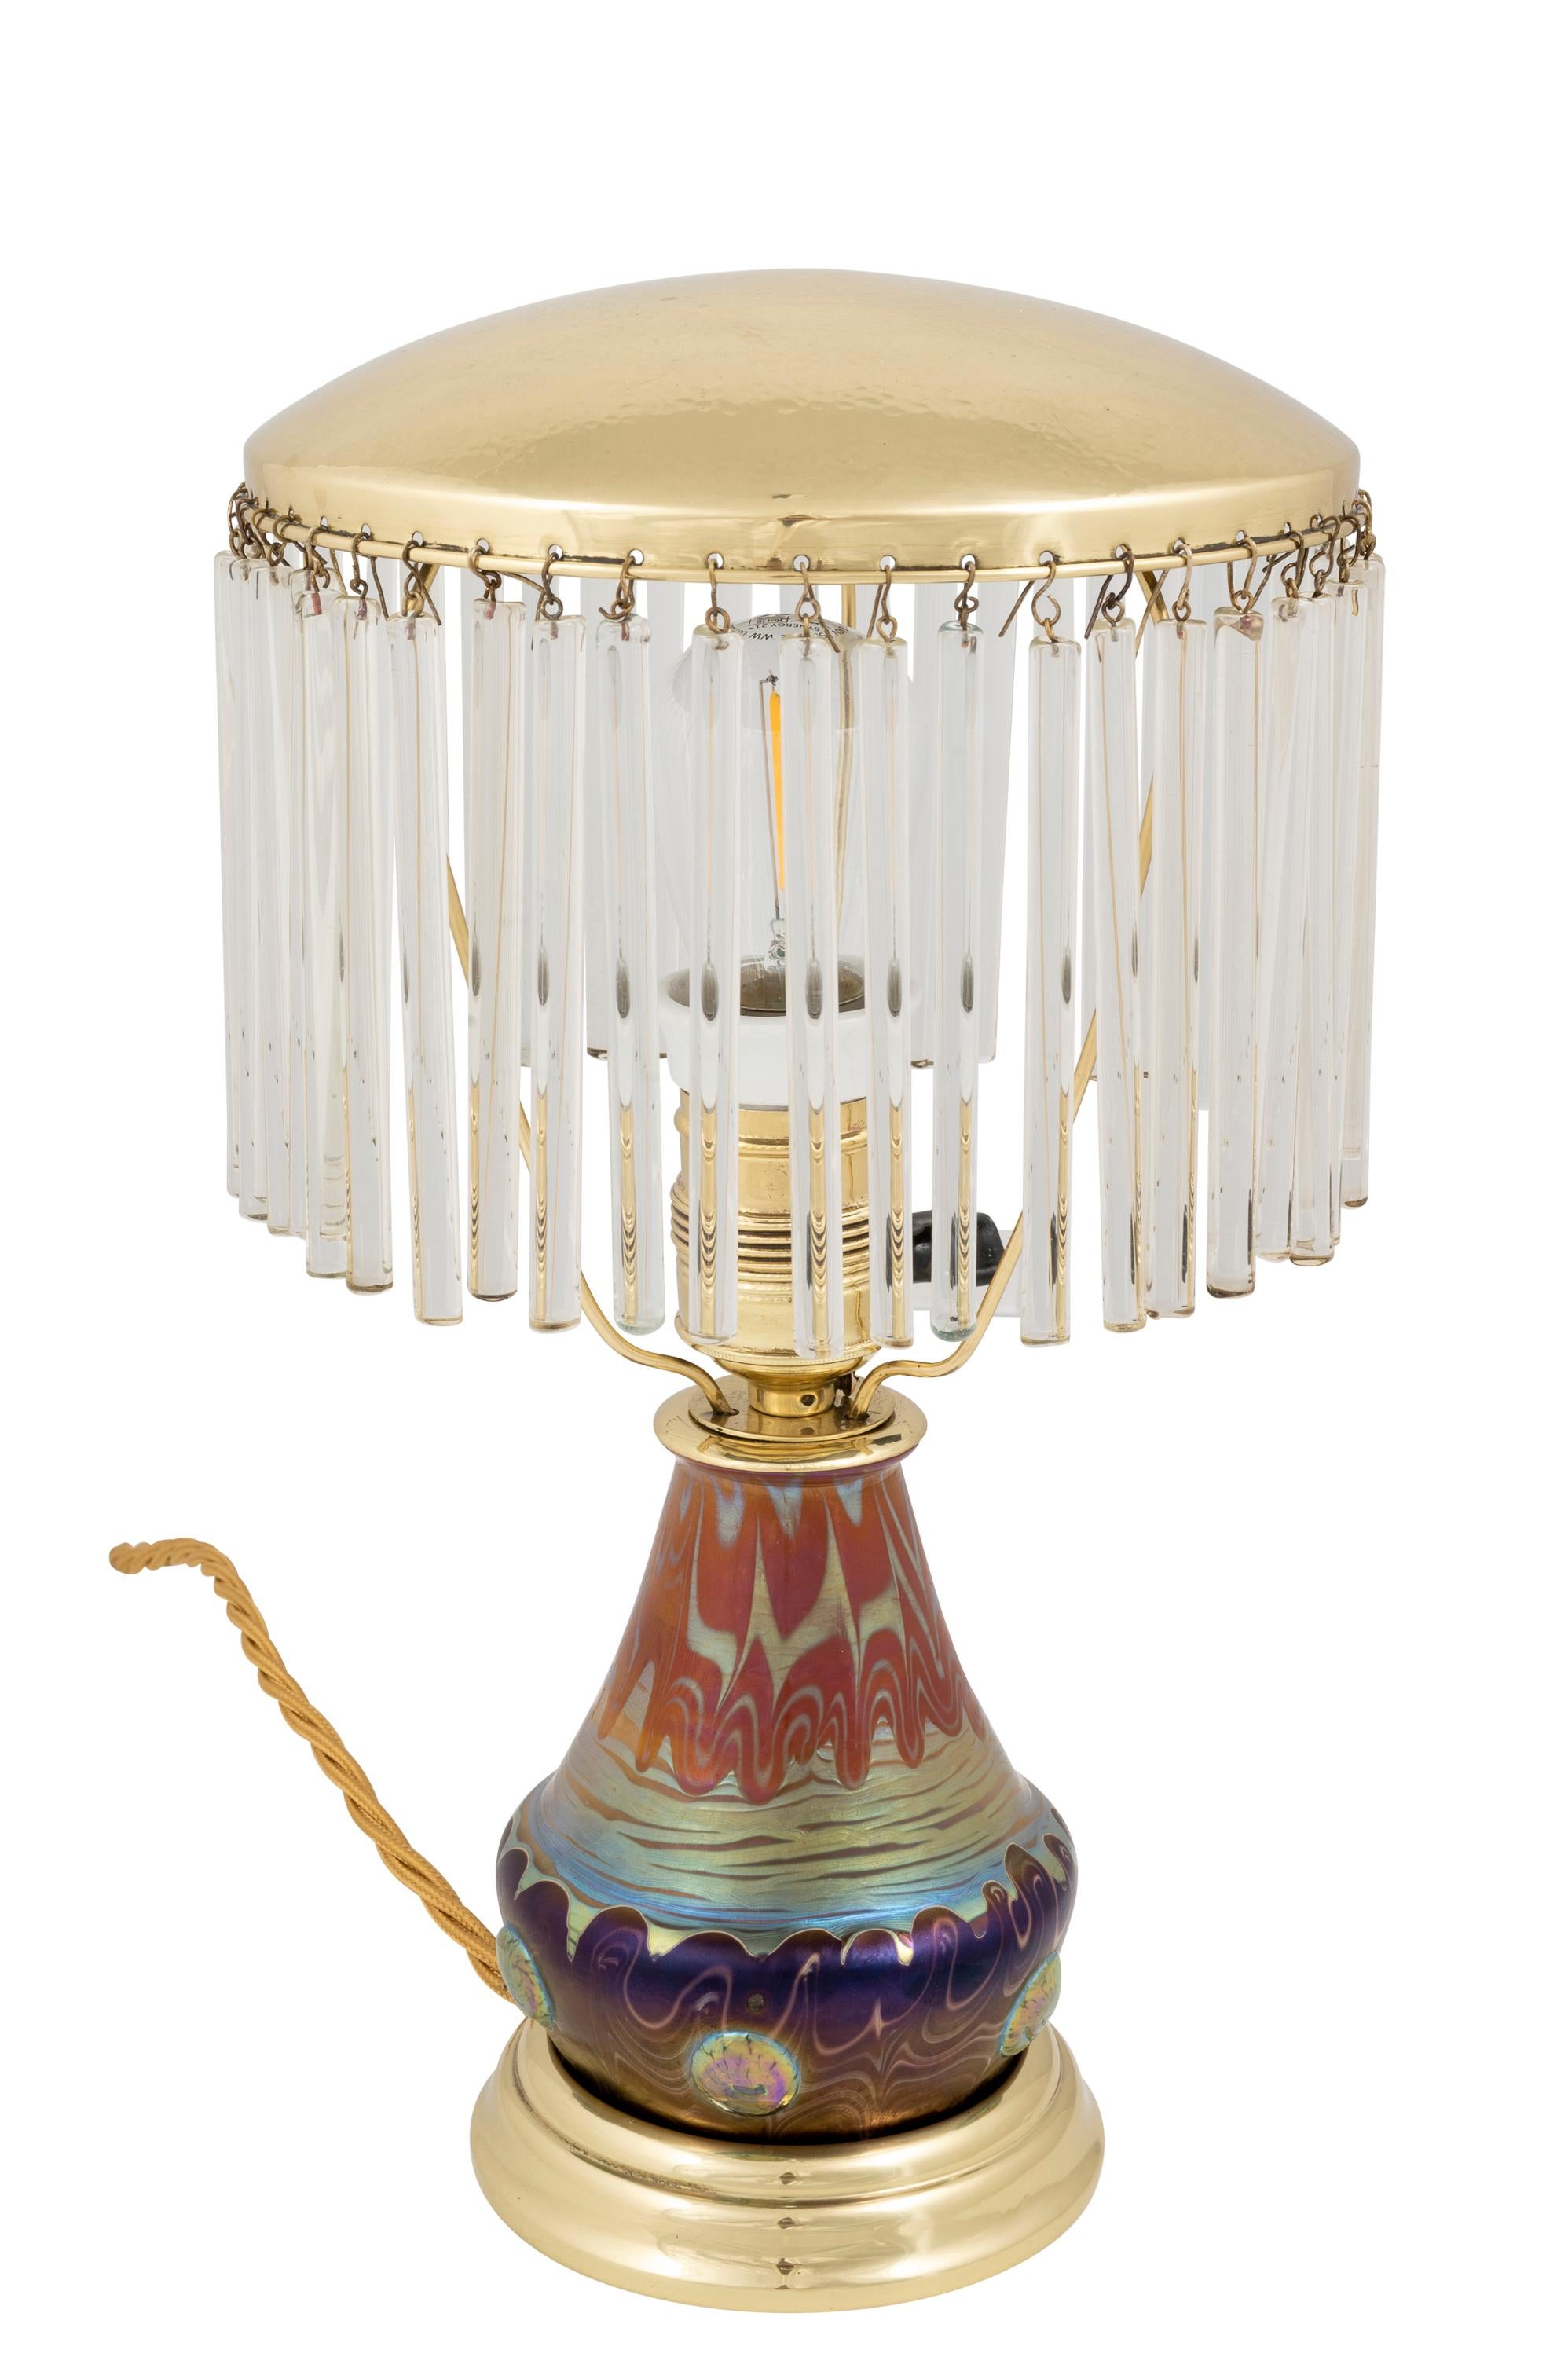 Jugendstil Colourful Table Lamp with Loetz Glass circa 1901 Austrian Art Nouveau  For Sale